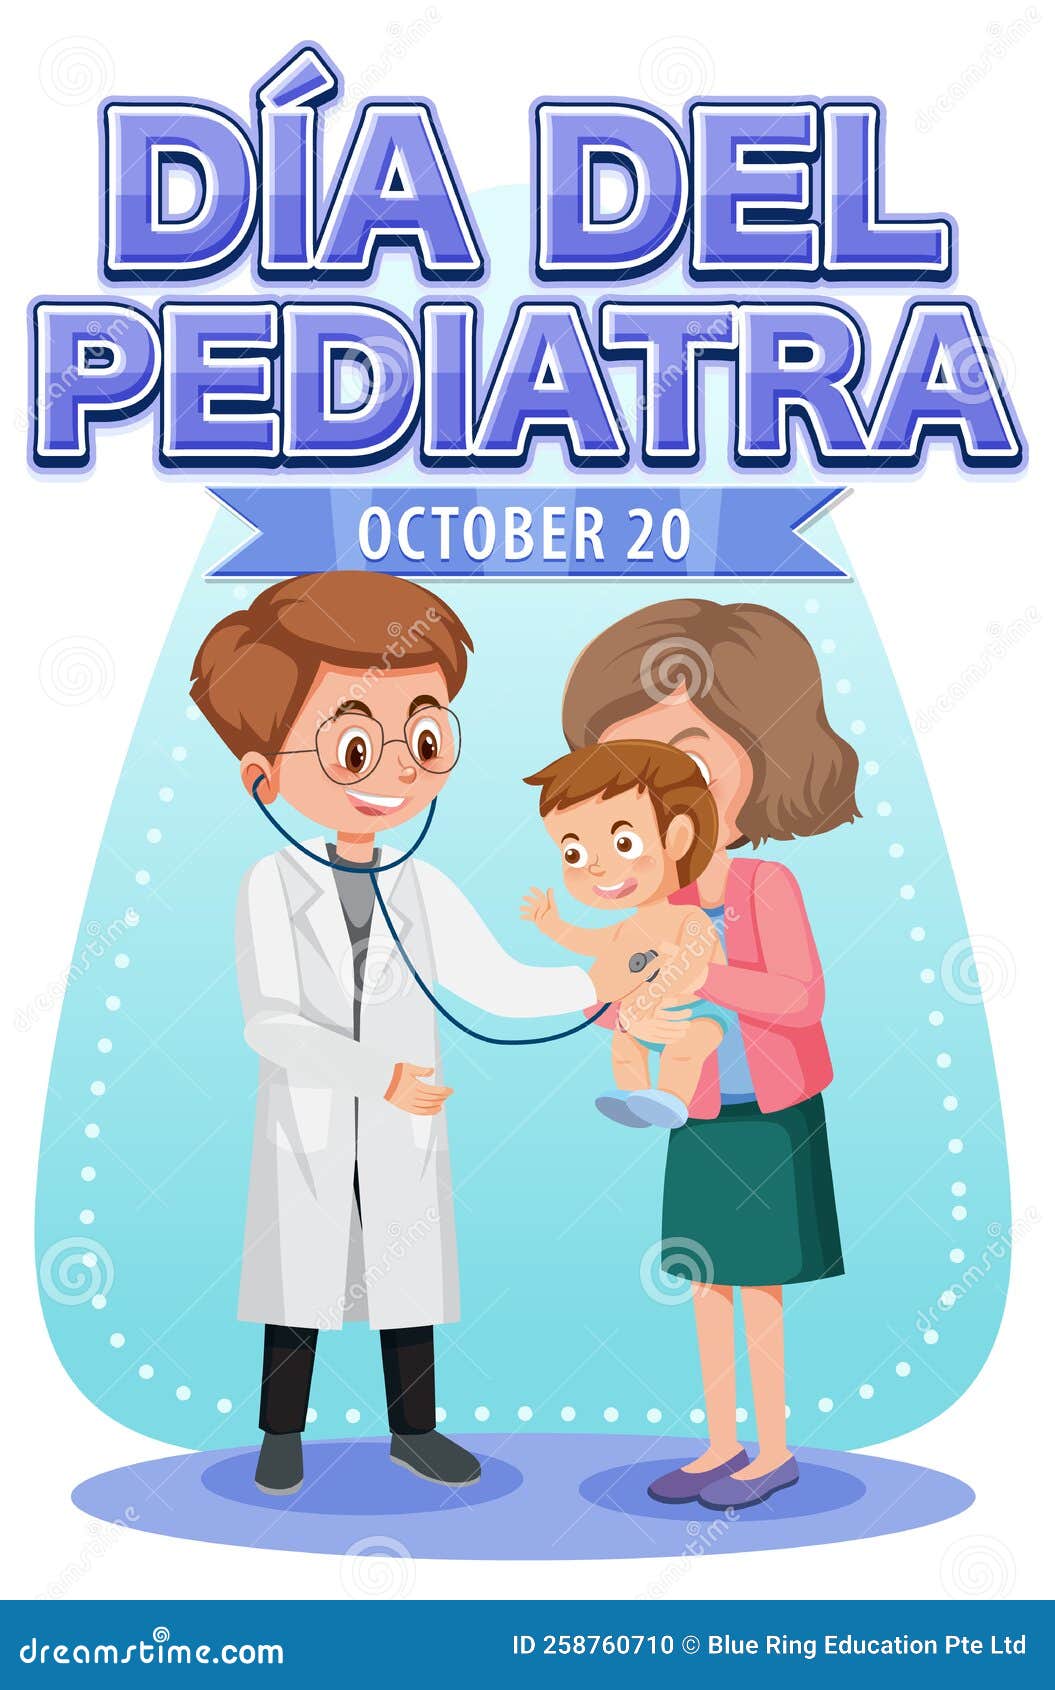 dÃÂ­a del pediatra text with cartoon character